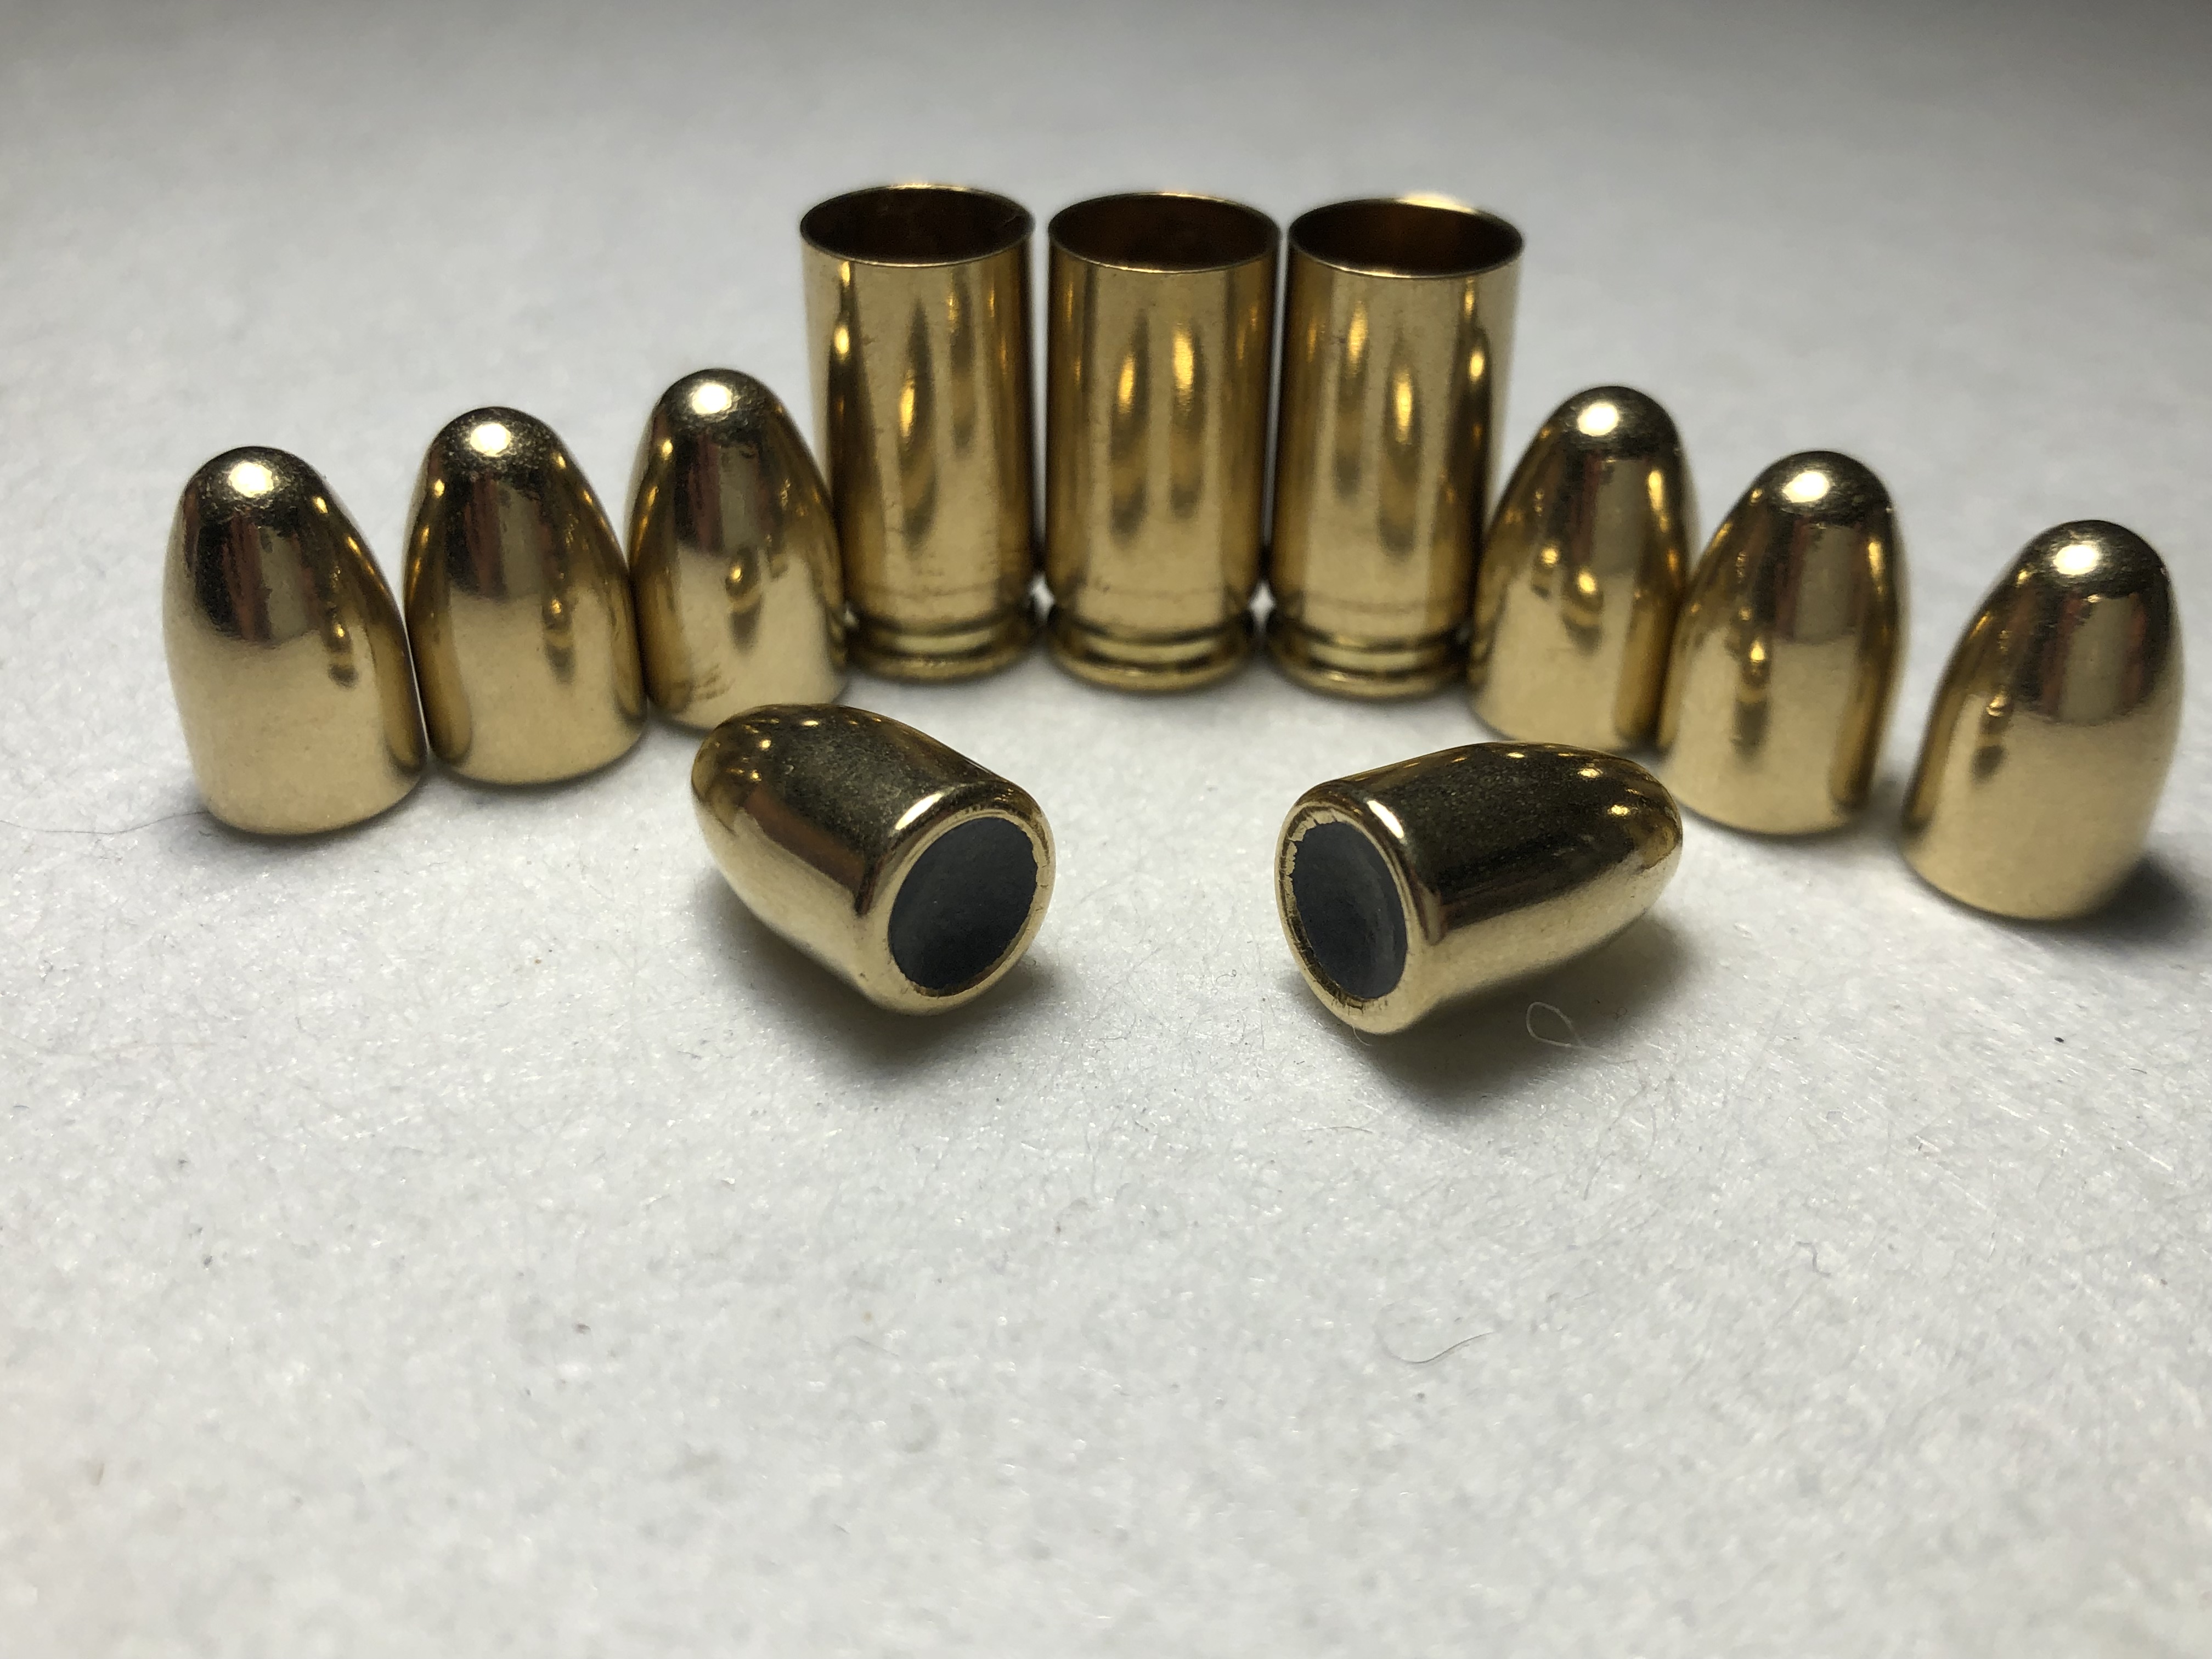  Brass + Projo - 9mm Kits - 115 Gr.